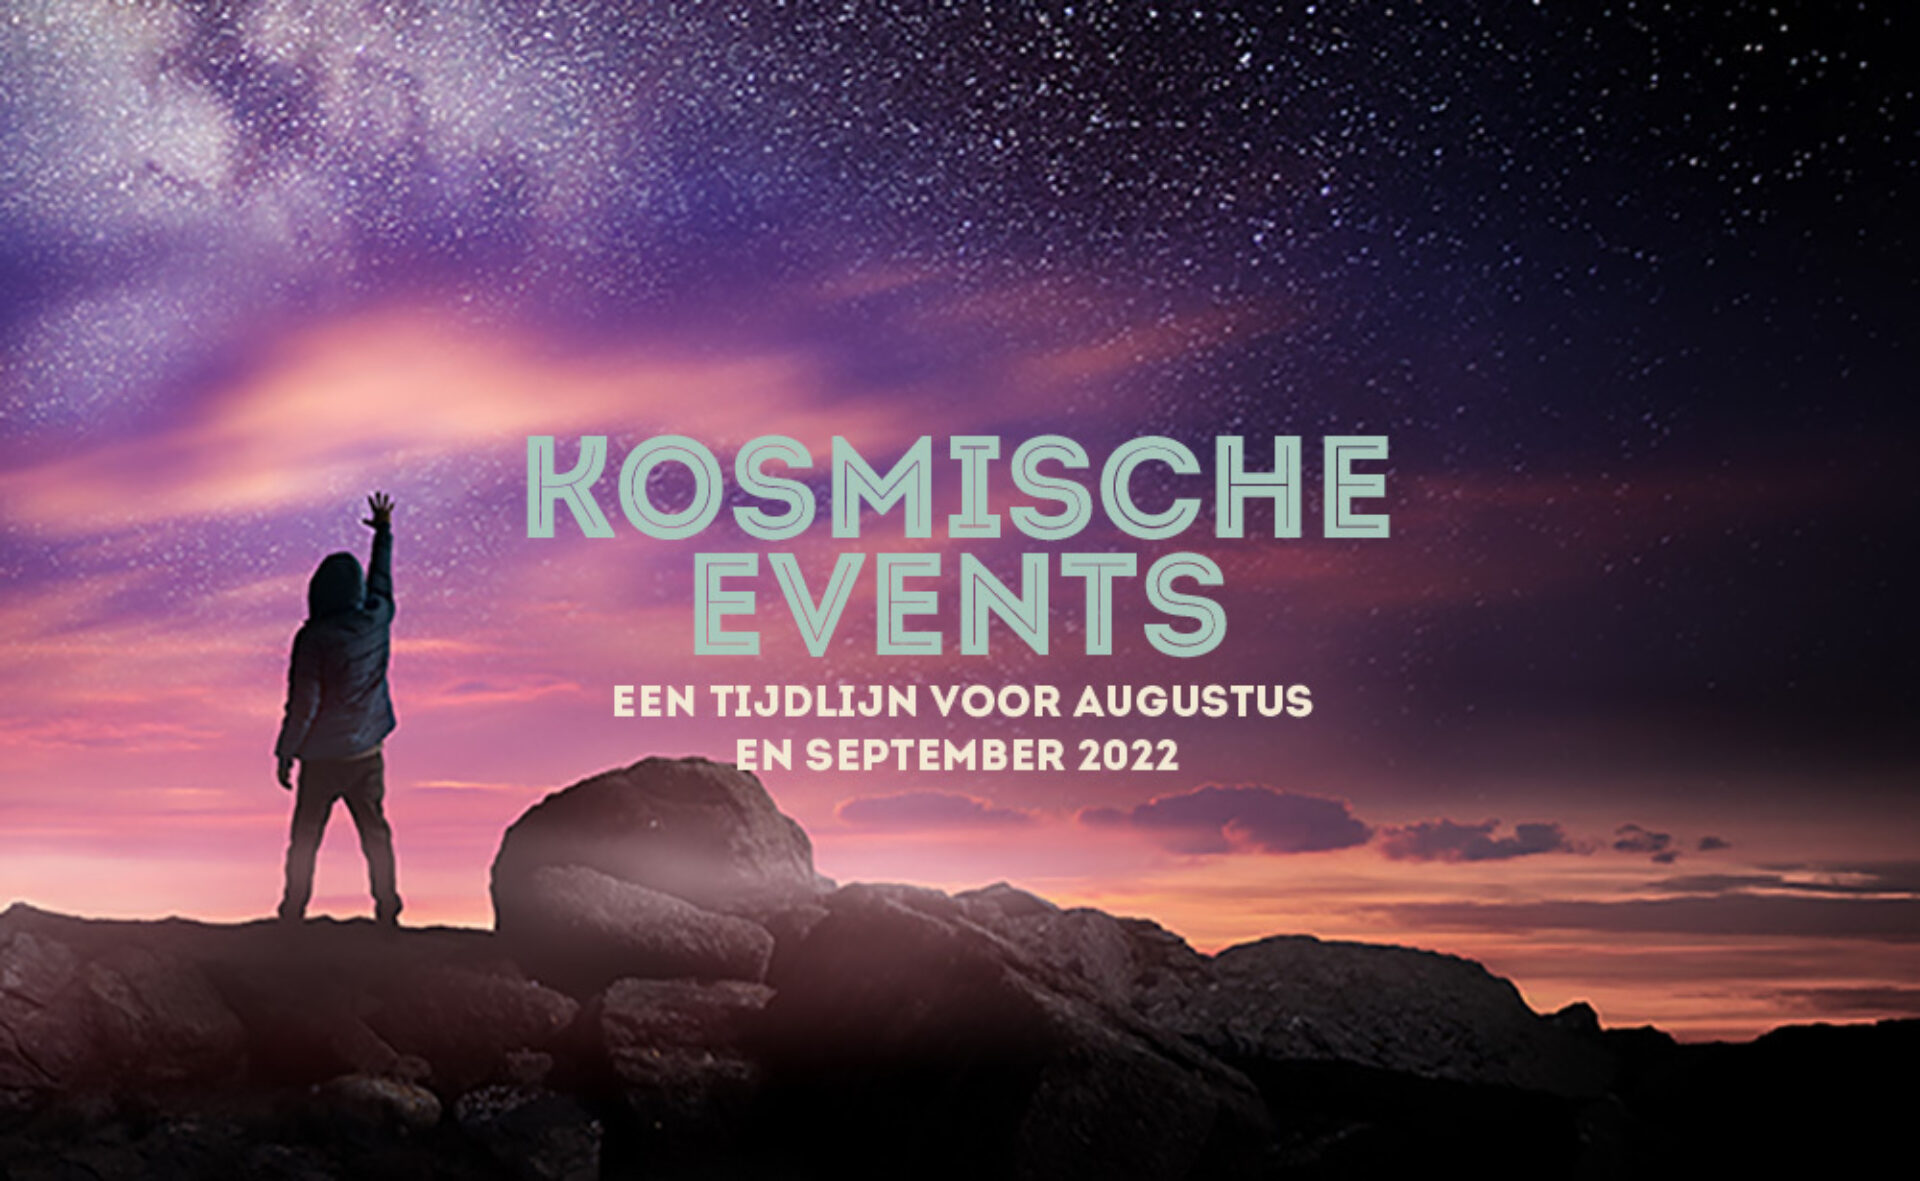 Kosmische events: een tijdlijn van augustus t/m september 2022